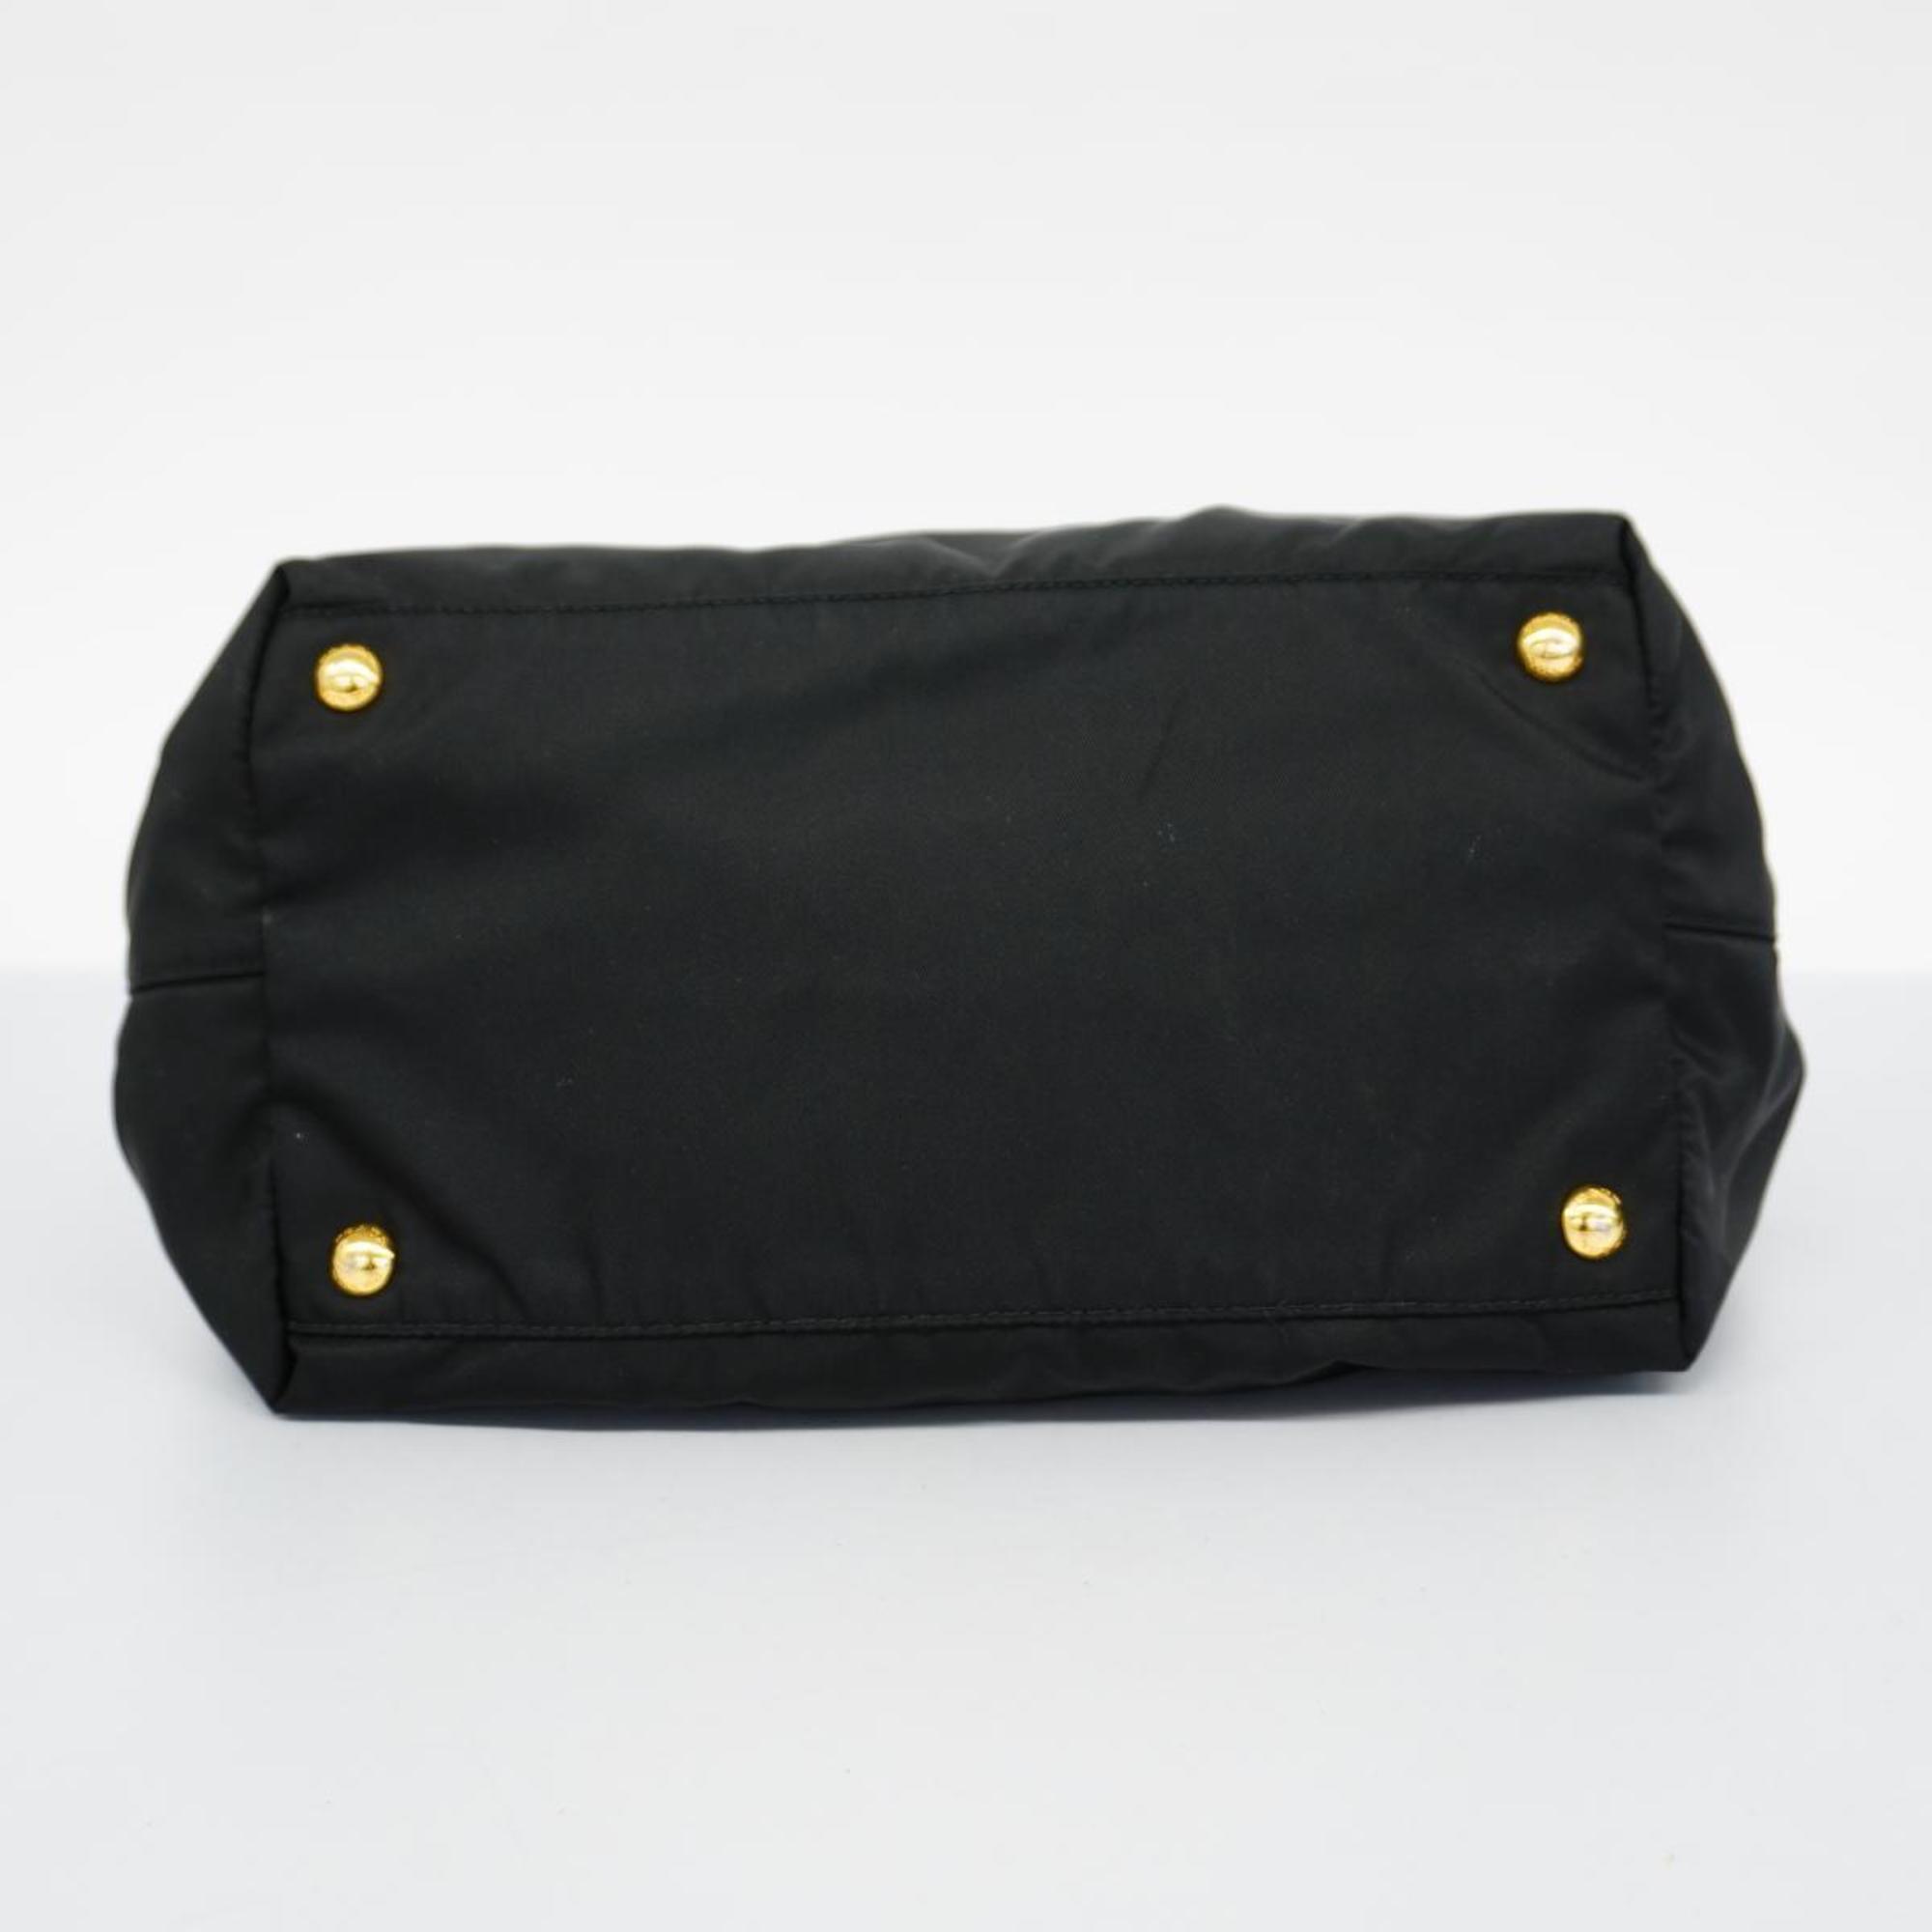 Prada handbag nylon black ladies